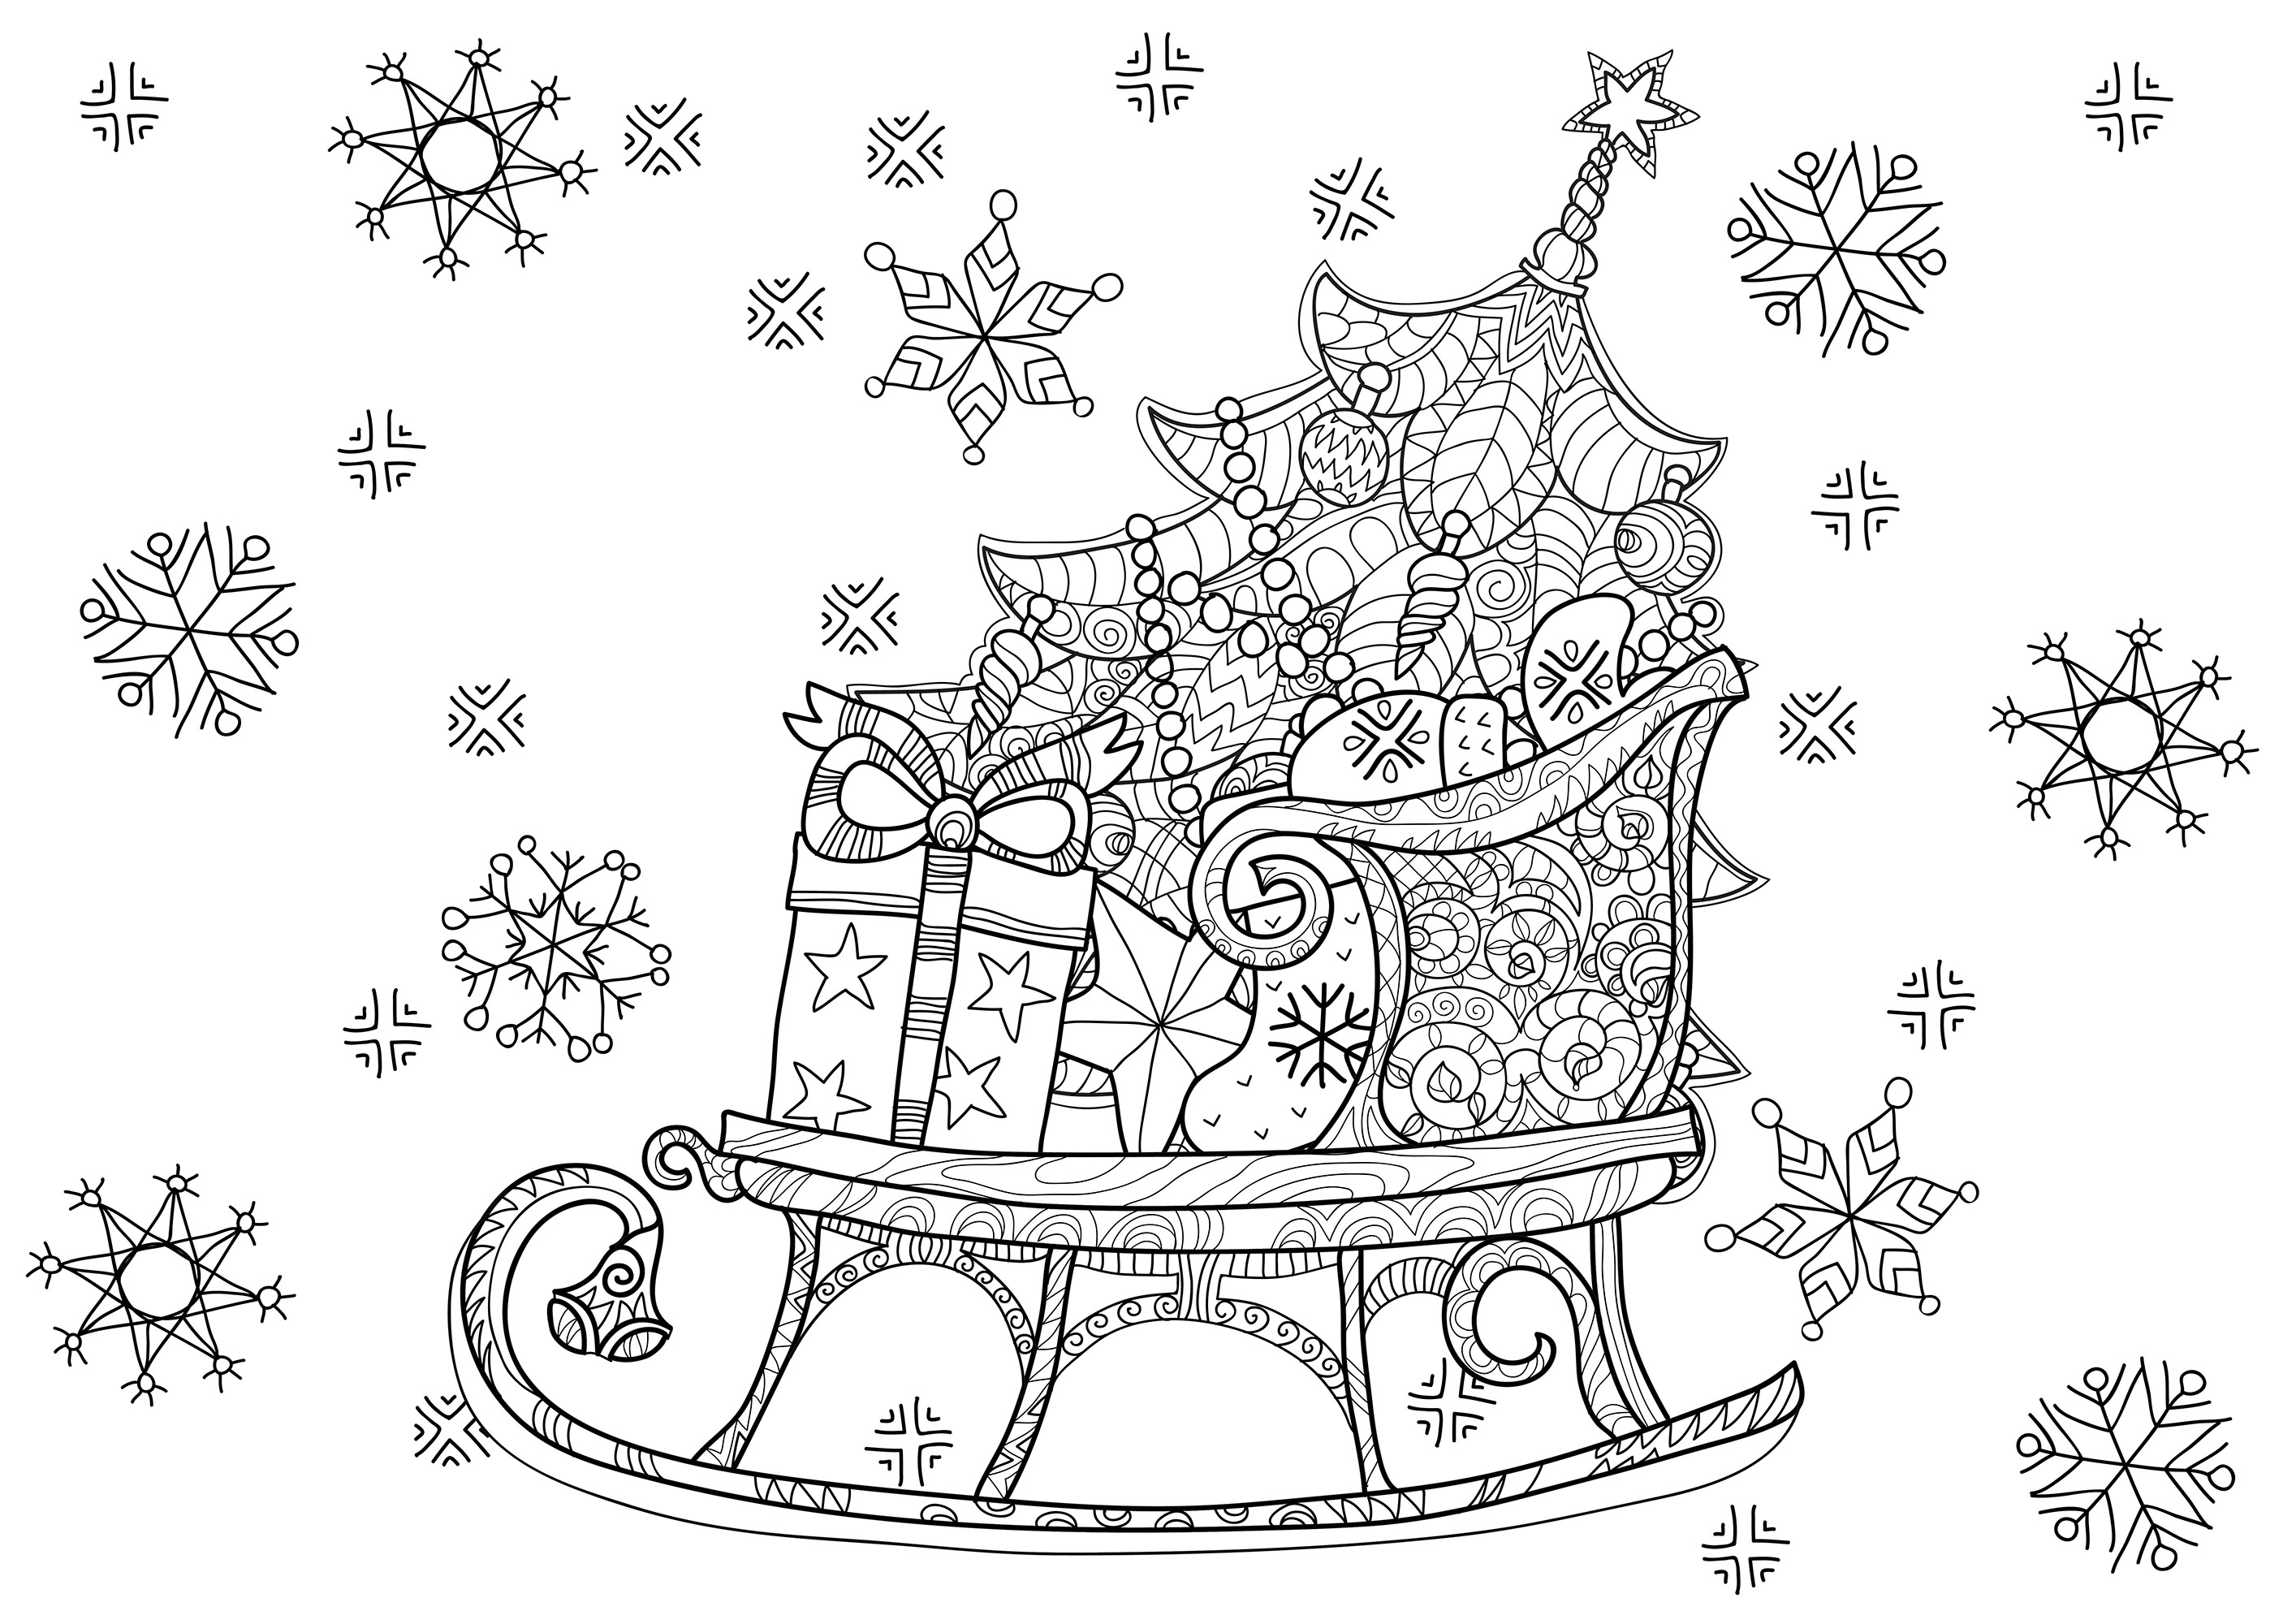 La slitta di Babbo Natale piena di regali, con un albero di Natale ben addobbato, Fonte : 123rf   Artista : Yazzik